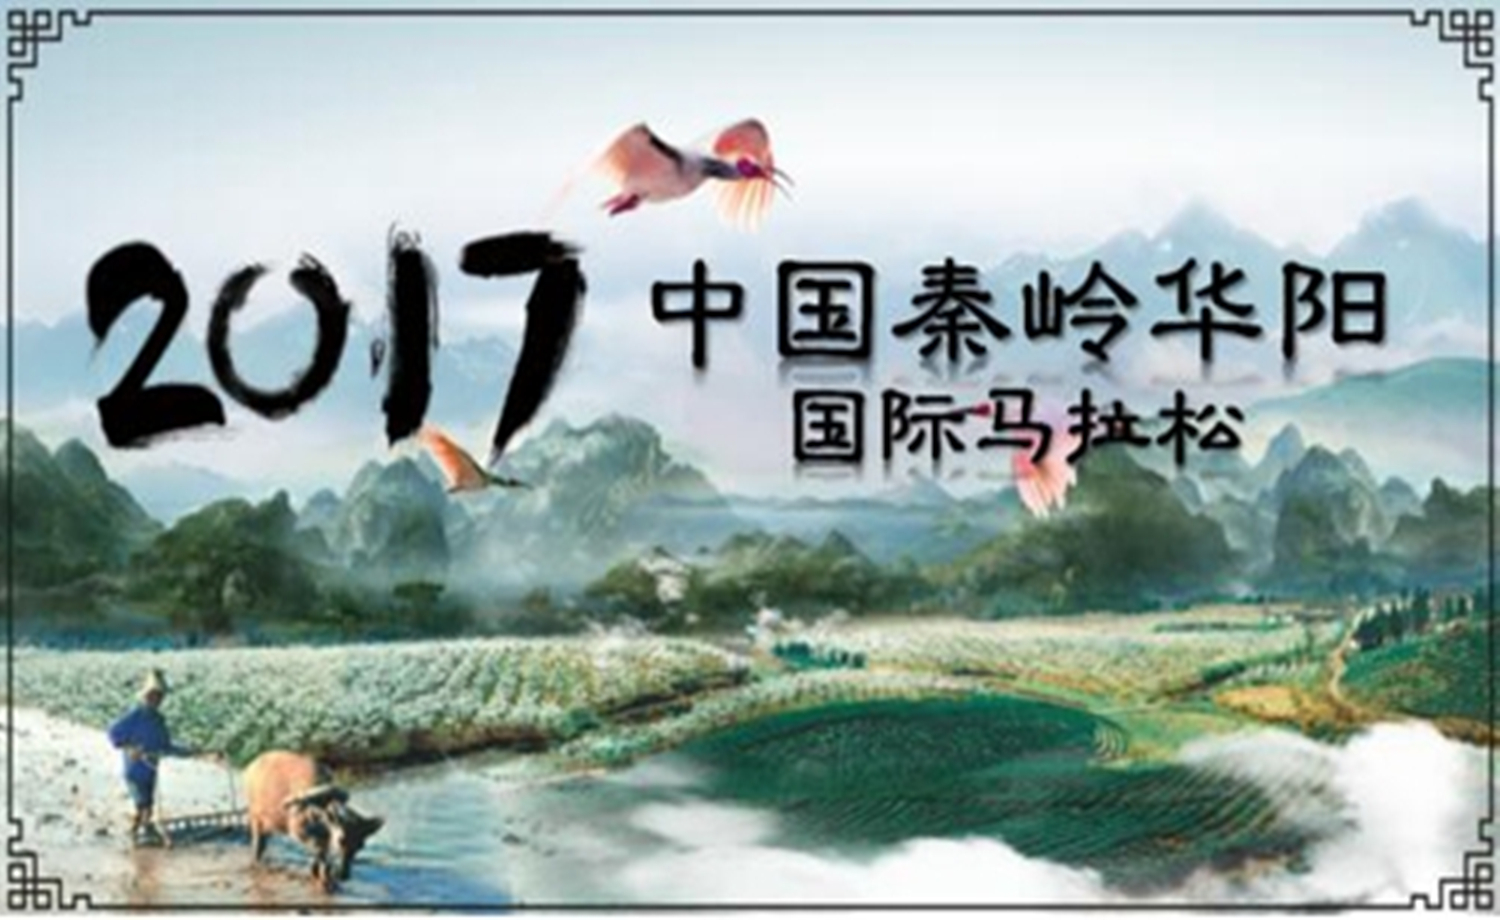 2017中国秦岭华阳国际马拉松